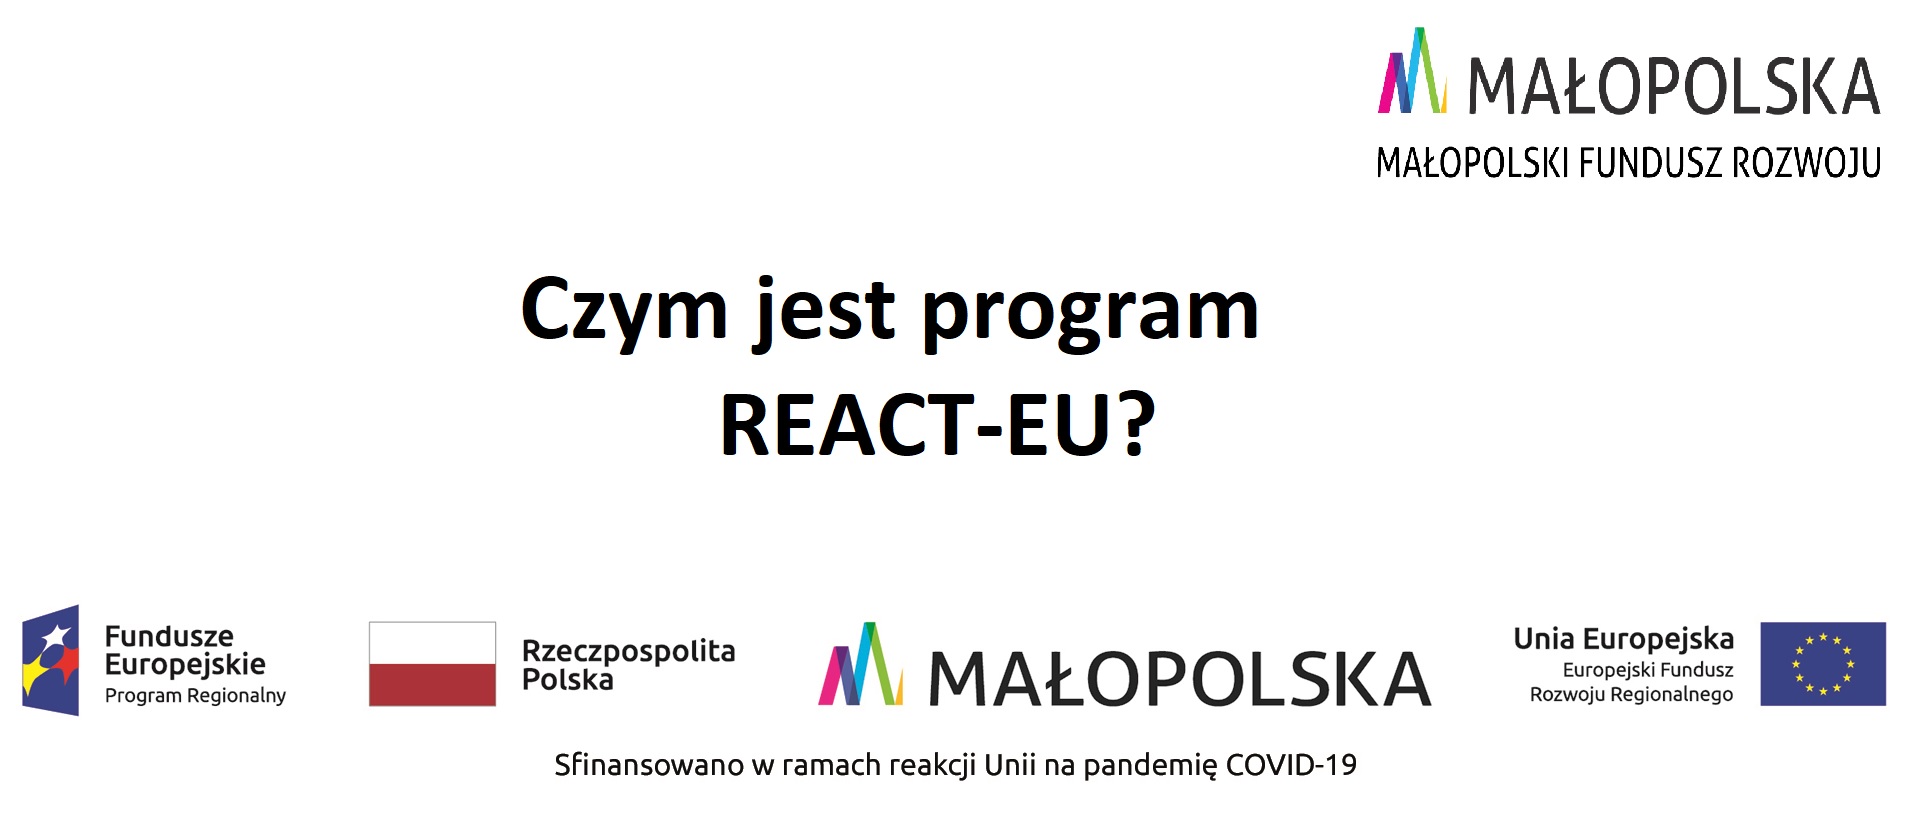 Czym jest program React-EU